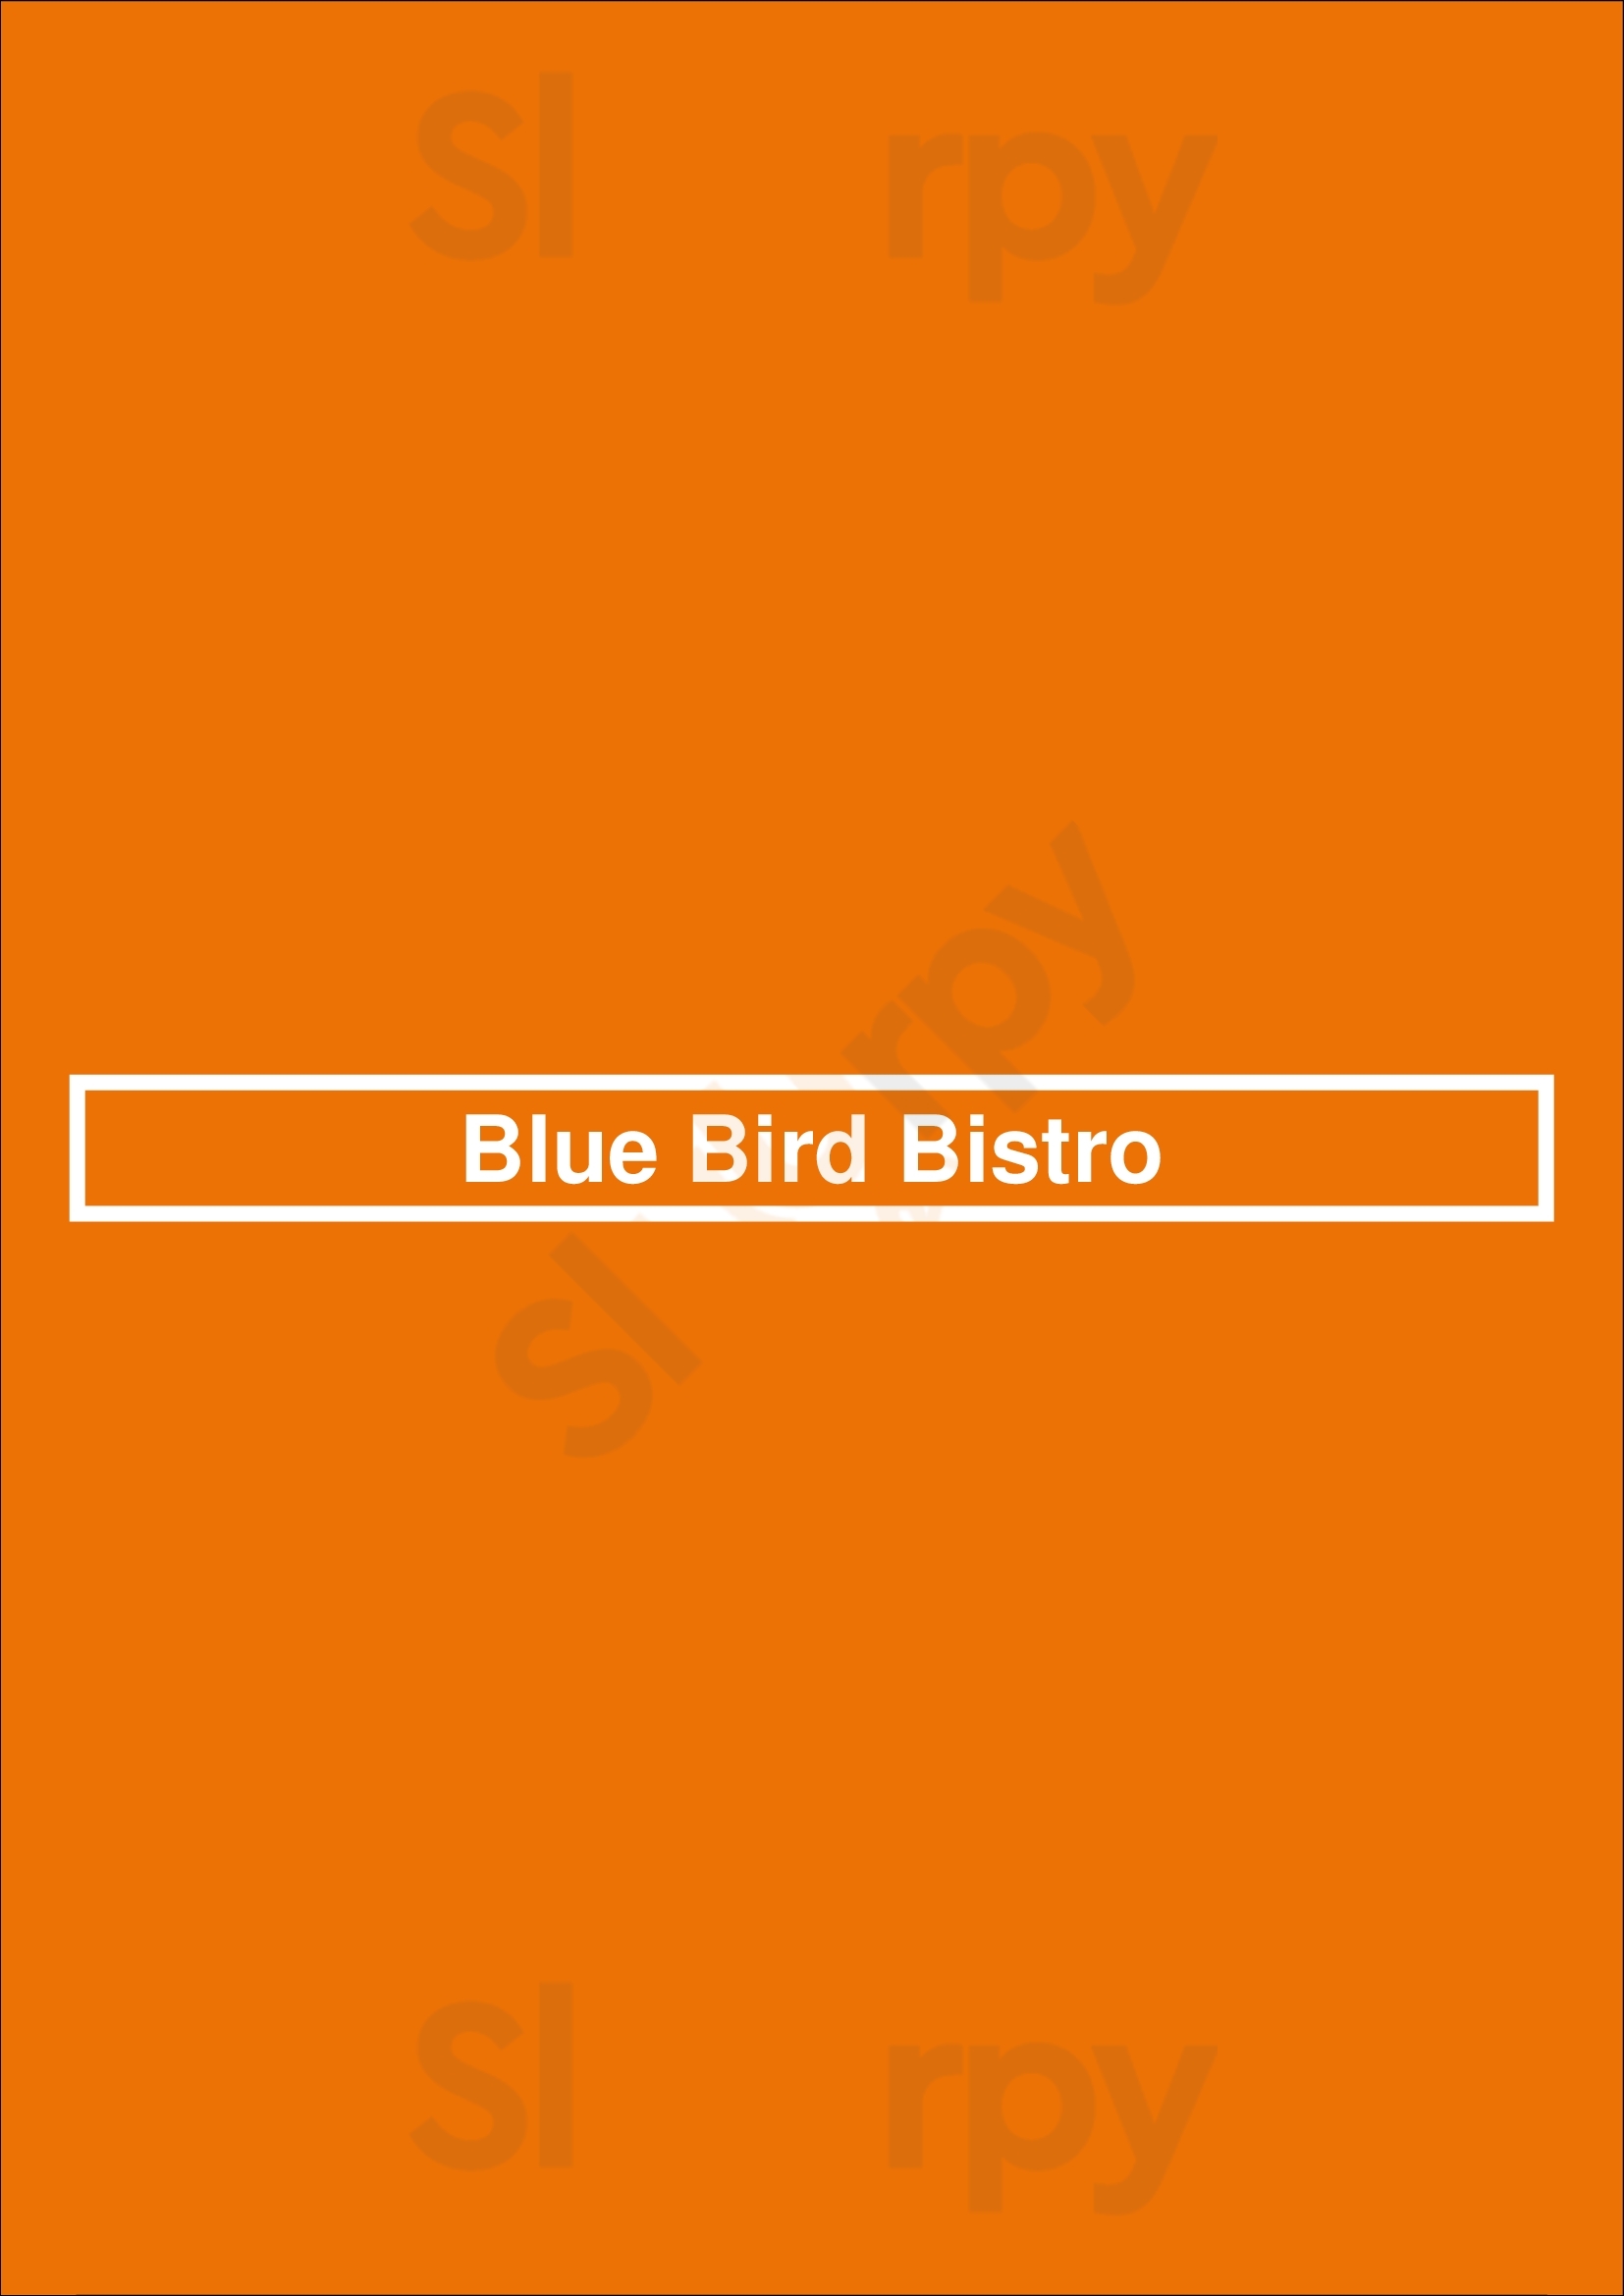 Blue Bird Bistro Kansas City Menu - 1